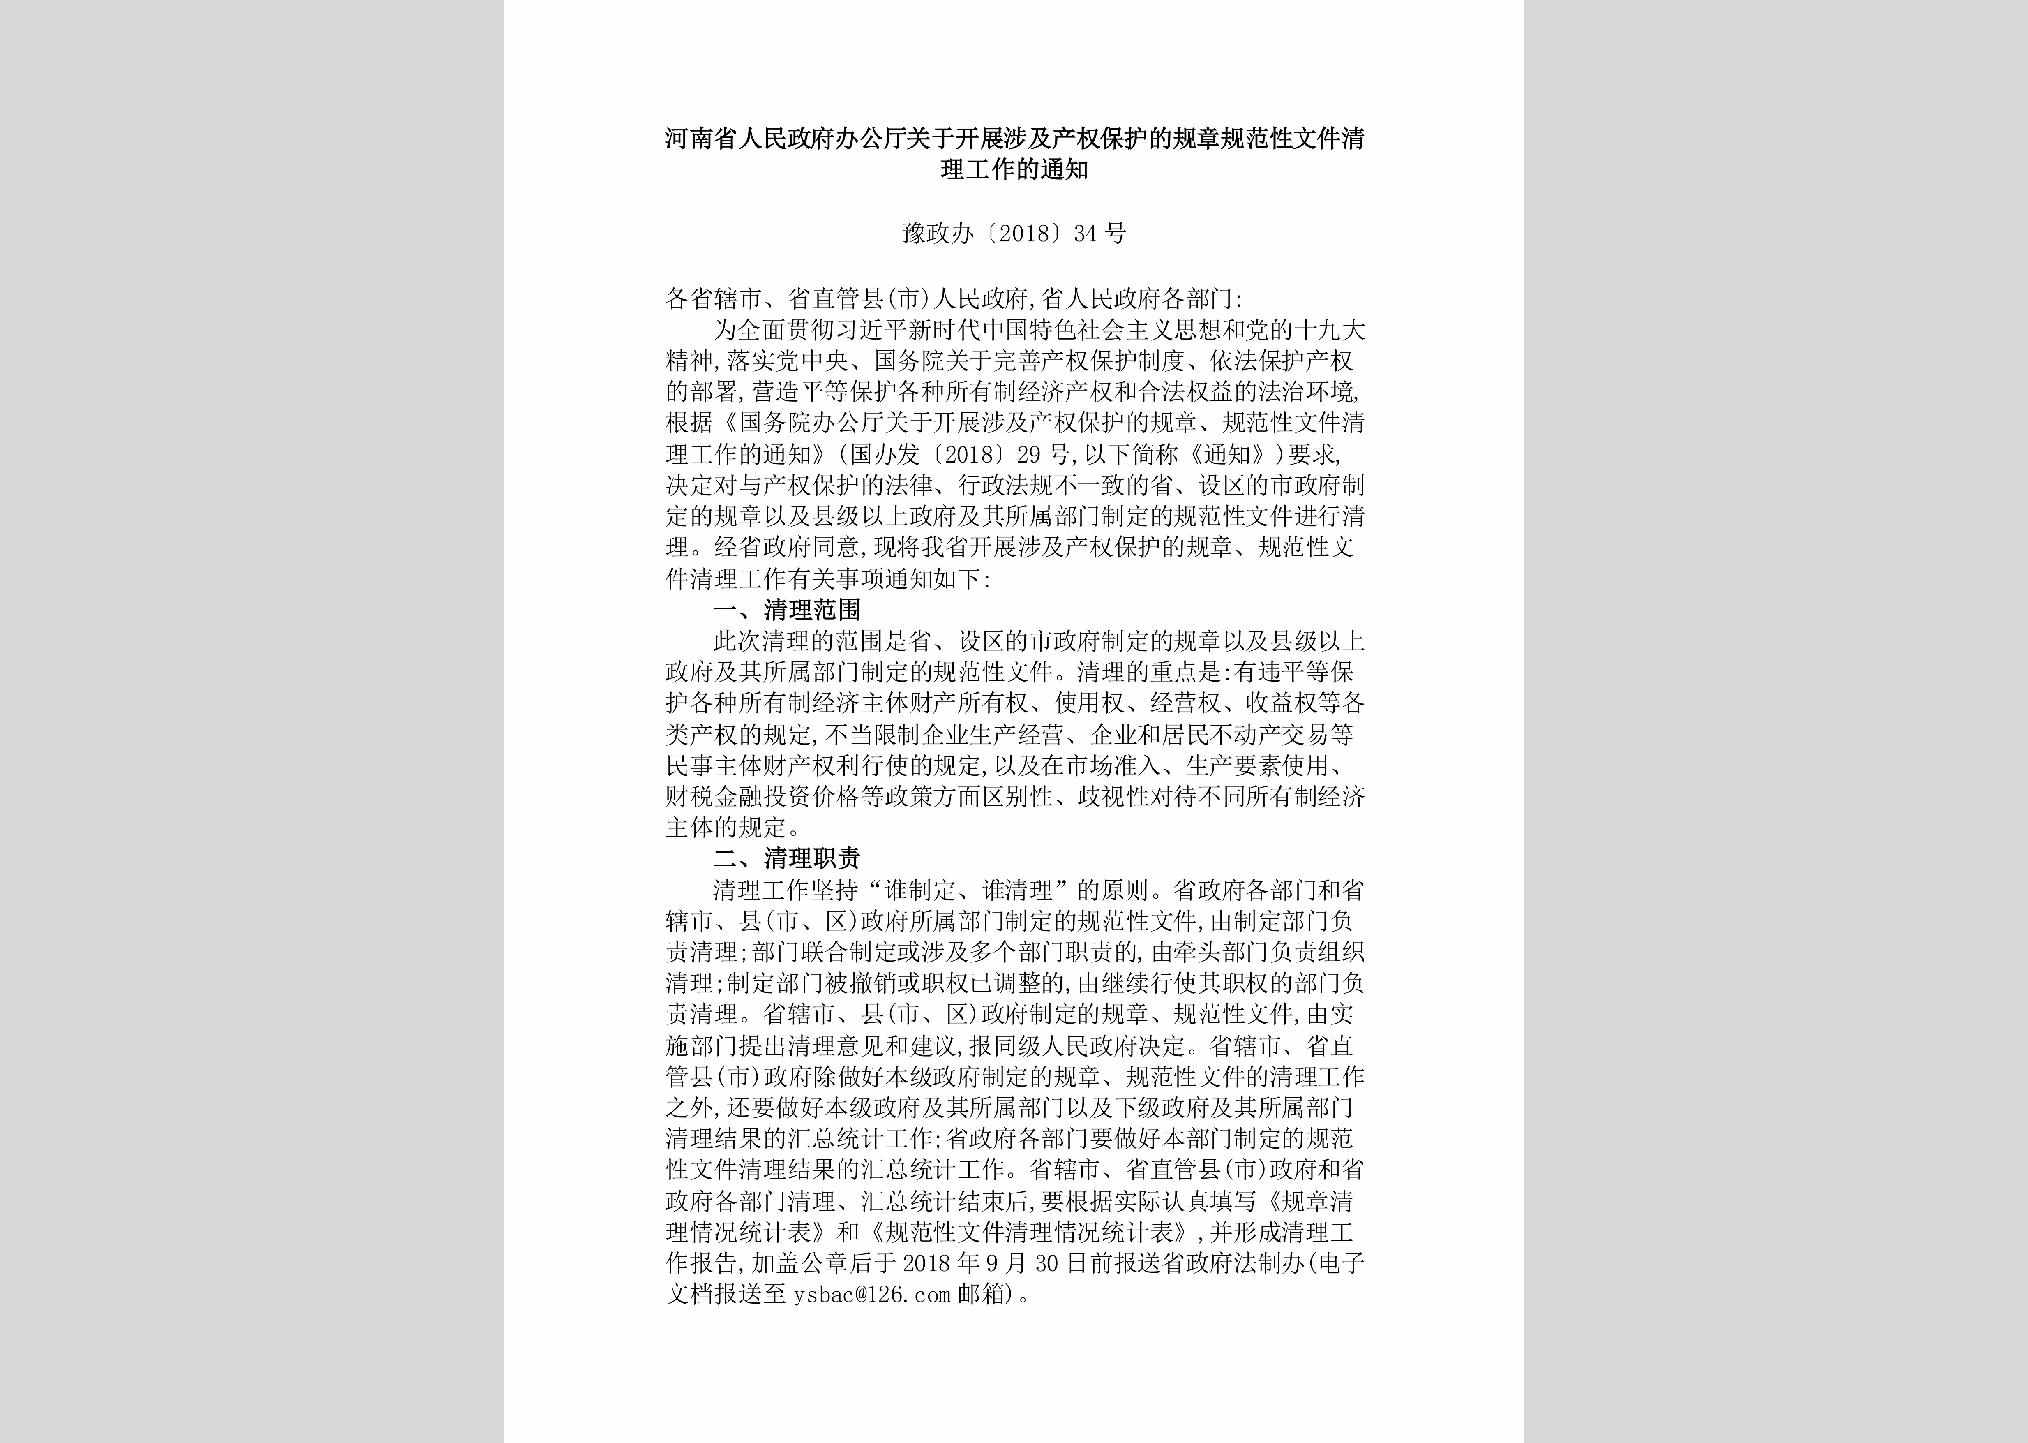 豫政办[2018]34号：河南省人民政府办公厅关于开展涉及产权保护的规章规范性文件清理工作的通知